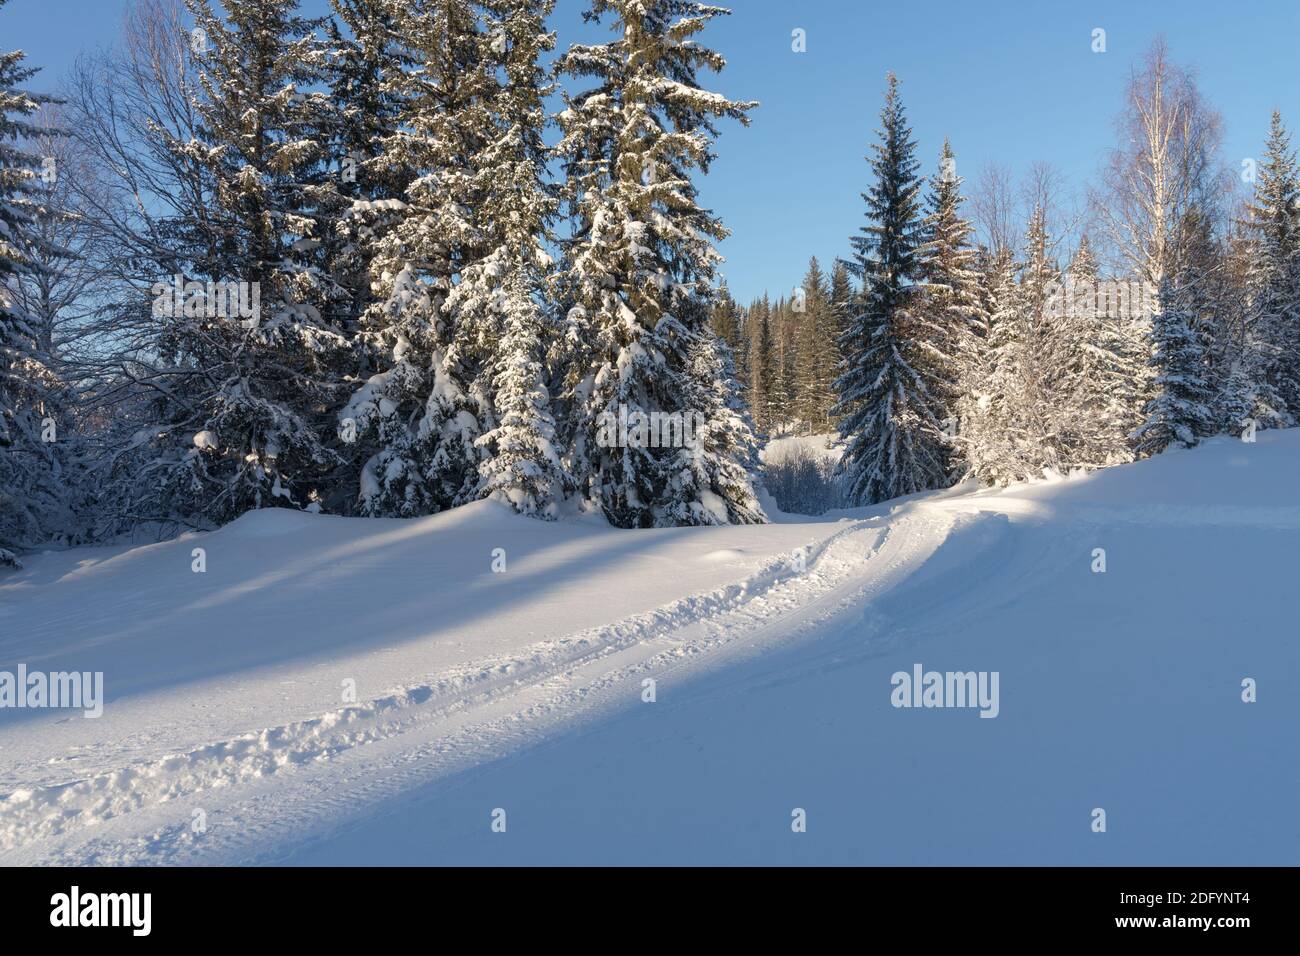 Il sentiero conduce attraverso una deriva di neve nella foresta ad alti abeti innevati in una soleggiata giornata invernale. Foto Stock